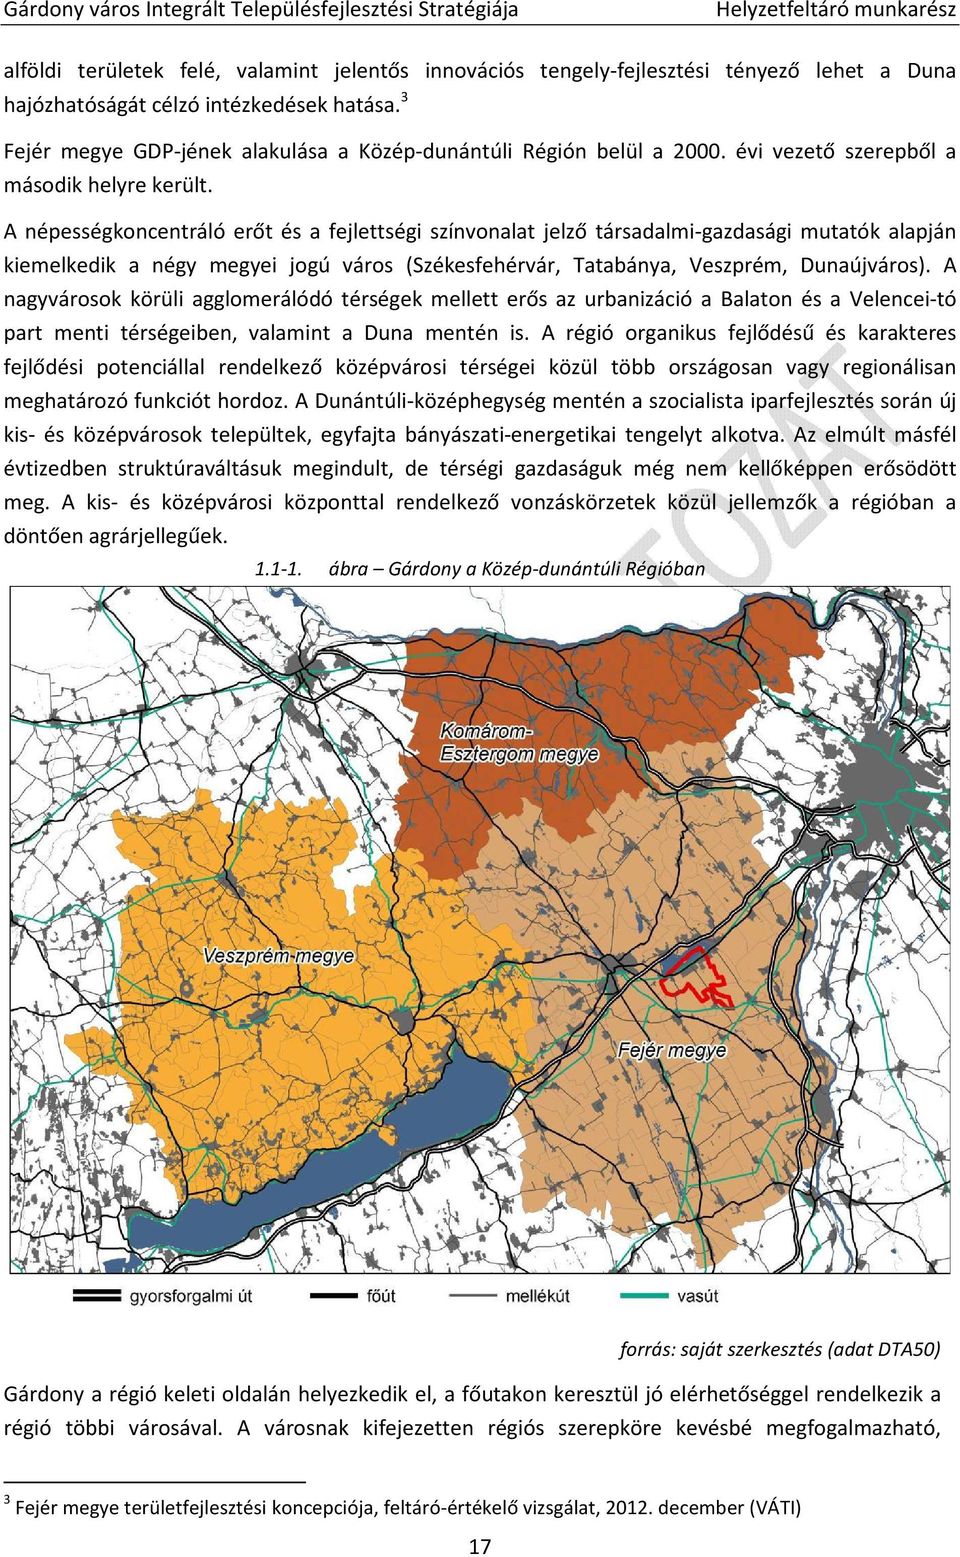 A népességkoncentráló erőt és a fejlettségi színvonalat jelző társadalmi-gazdasági mutatók alapján kiemelkedik a négy megyei jogú város (Székesfehérvár, Tatabánya, Veszprém, Dunaújváros).